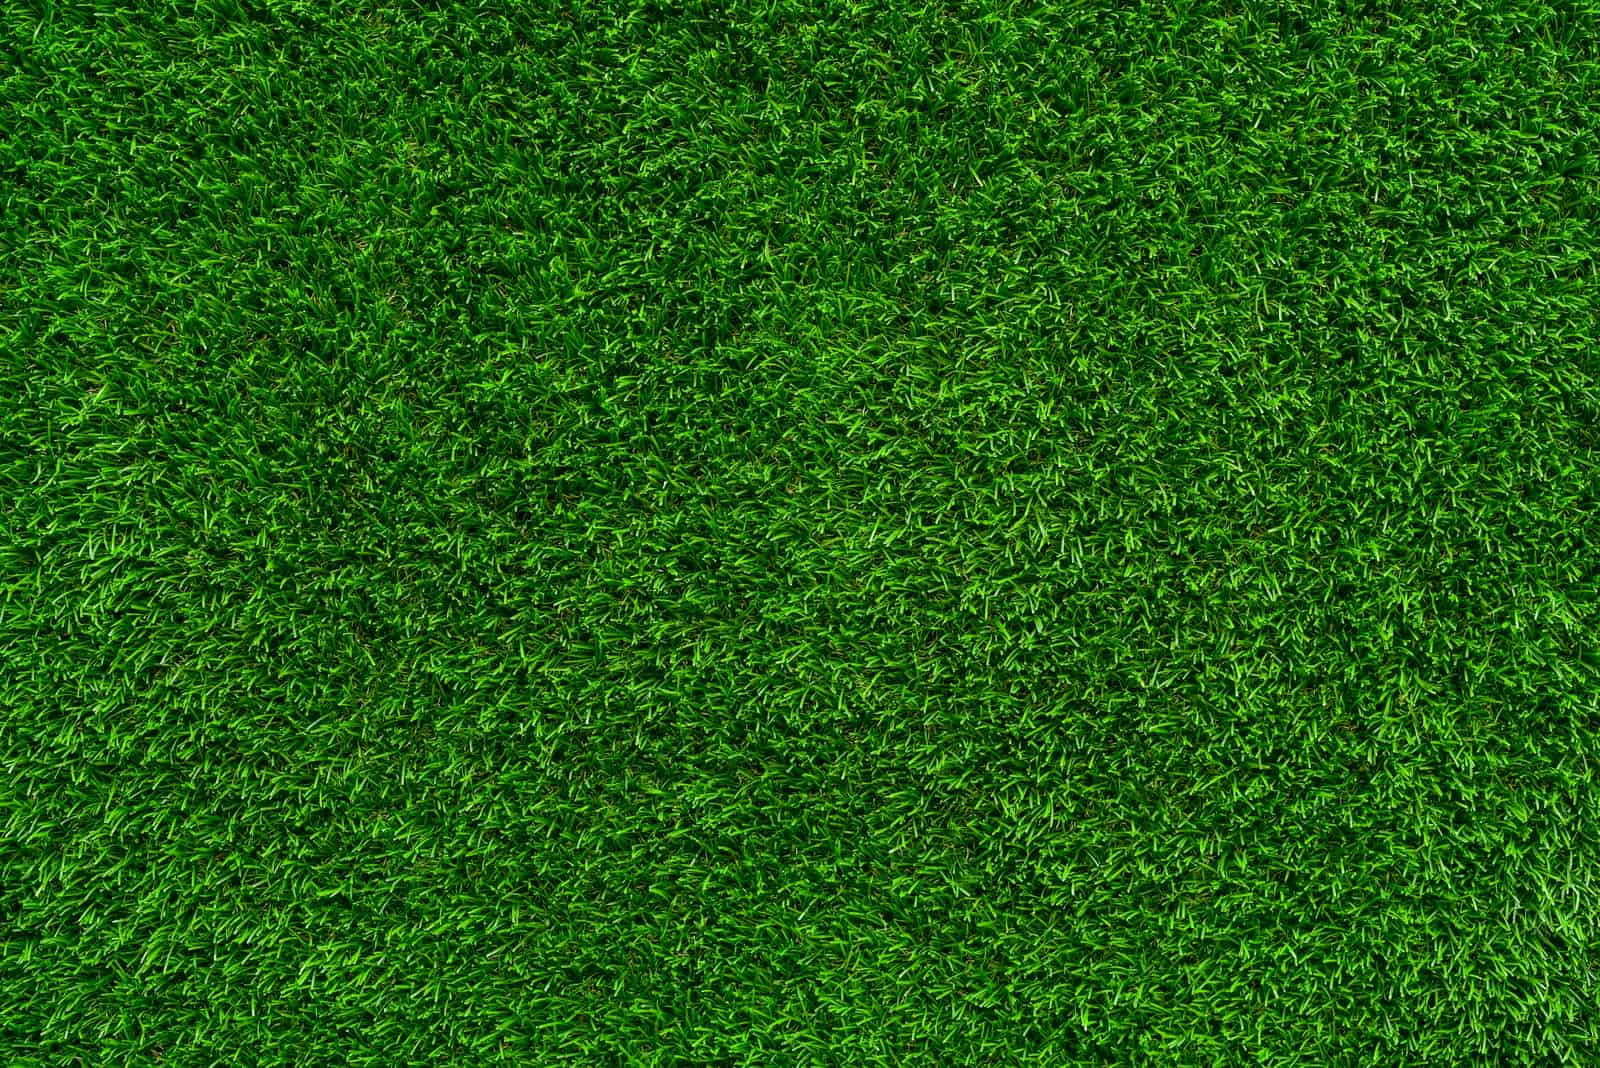 Carpet grass